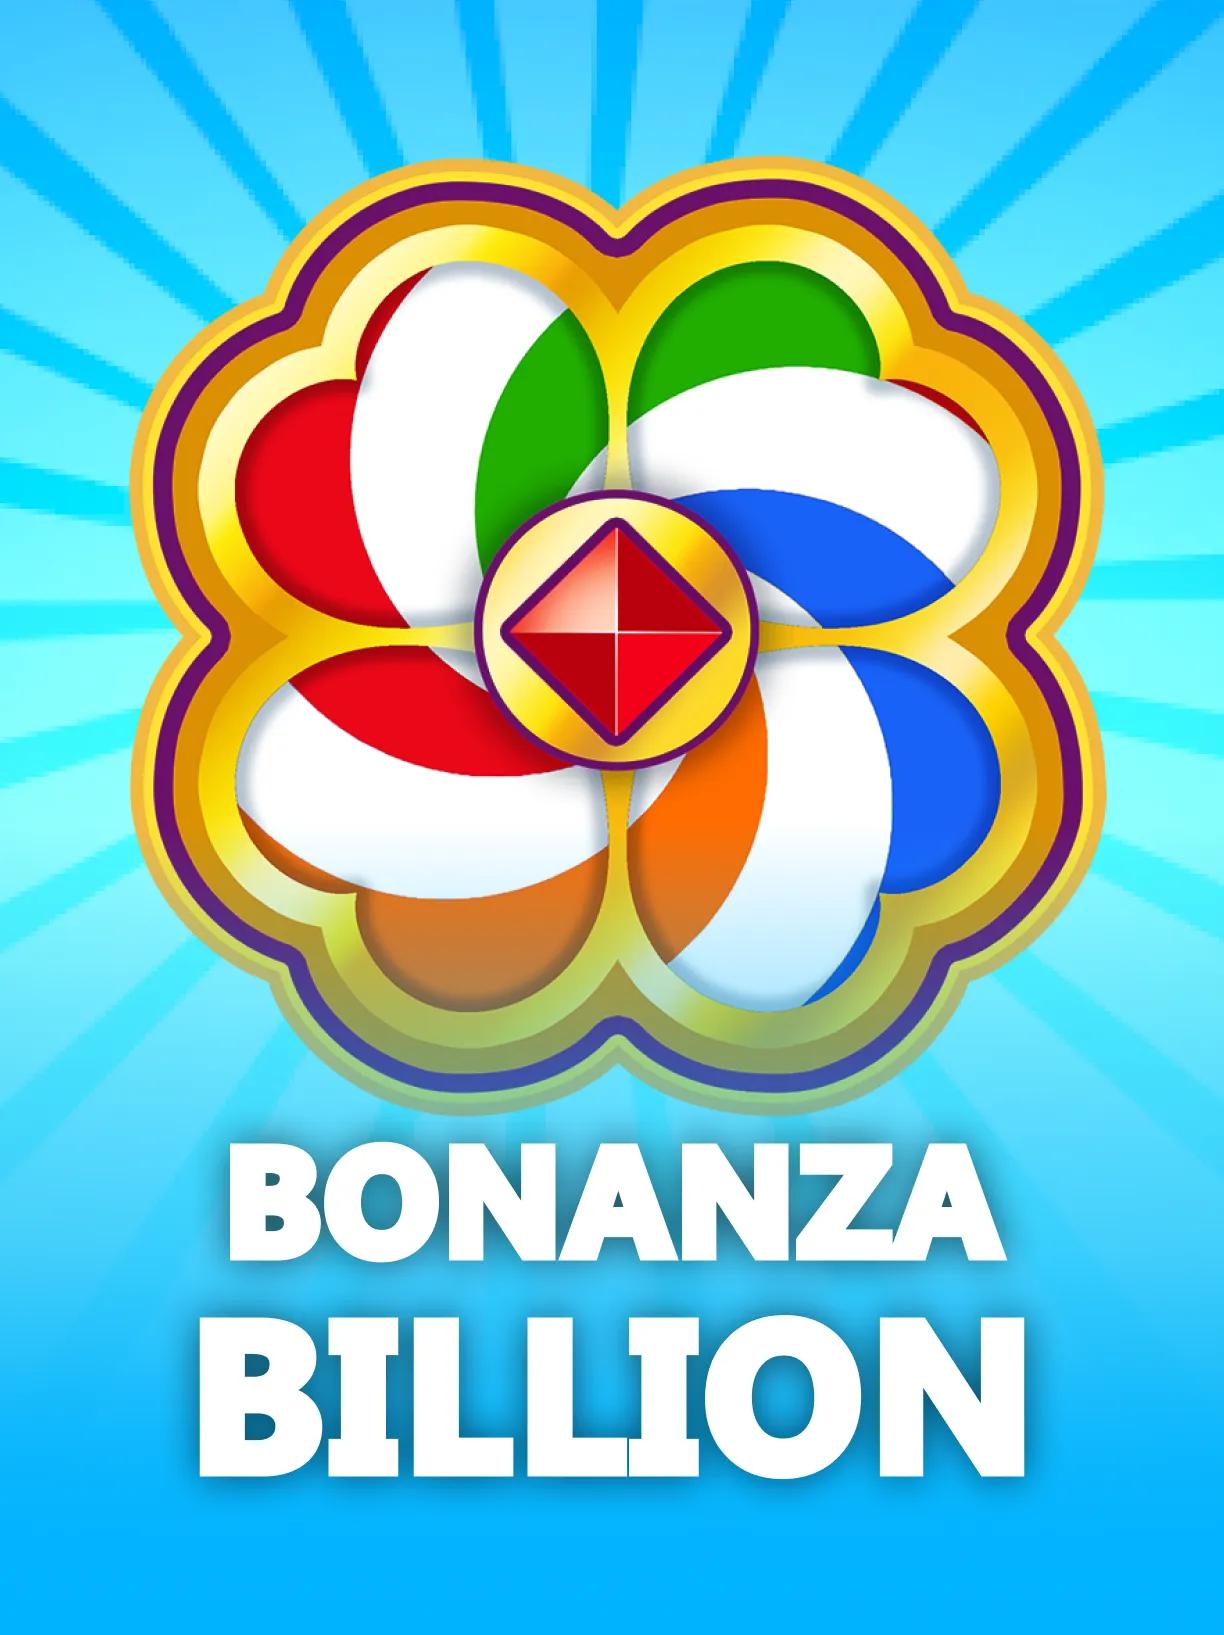 Bonanza_Billion_square.webp